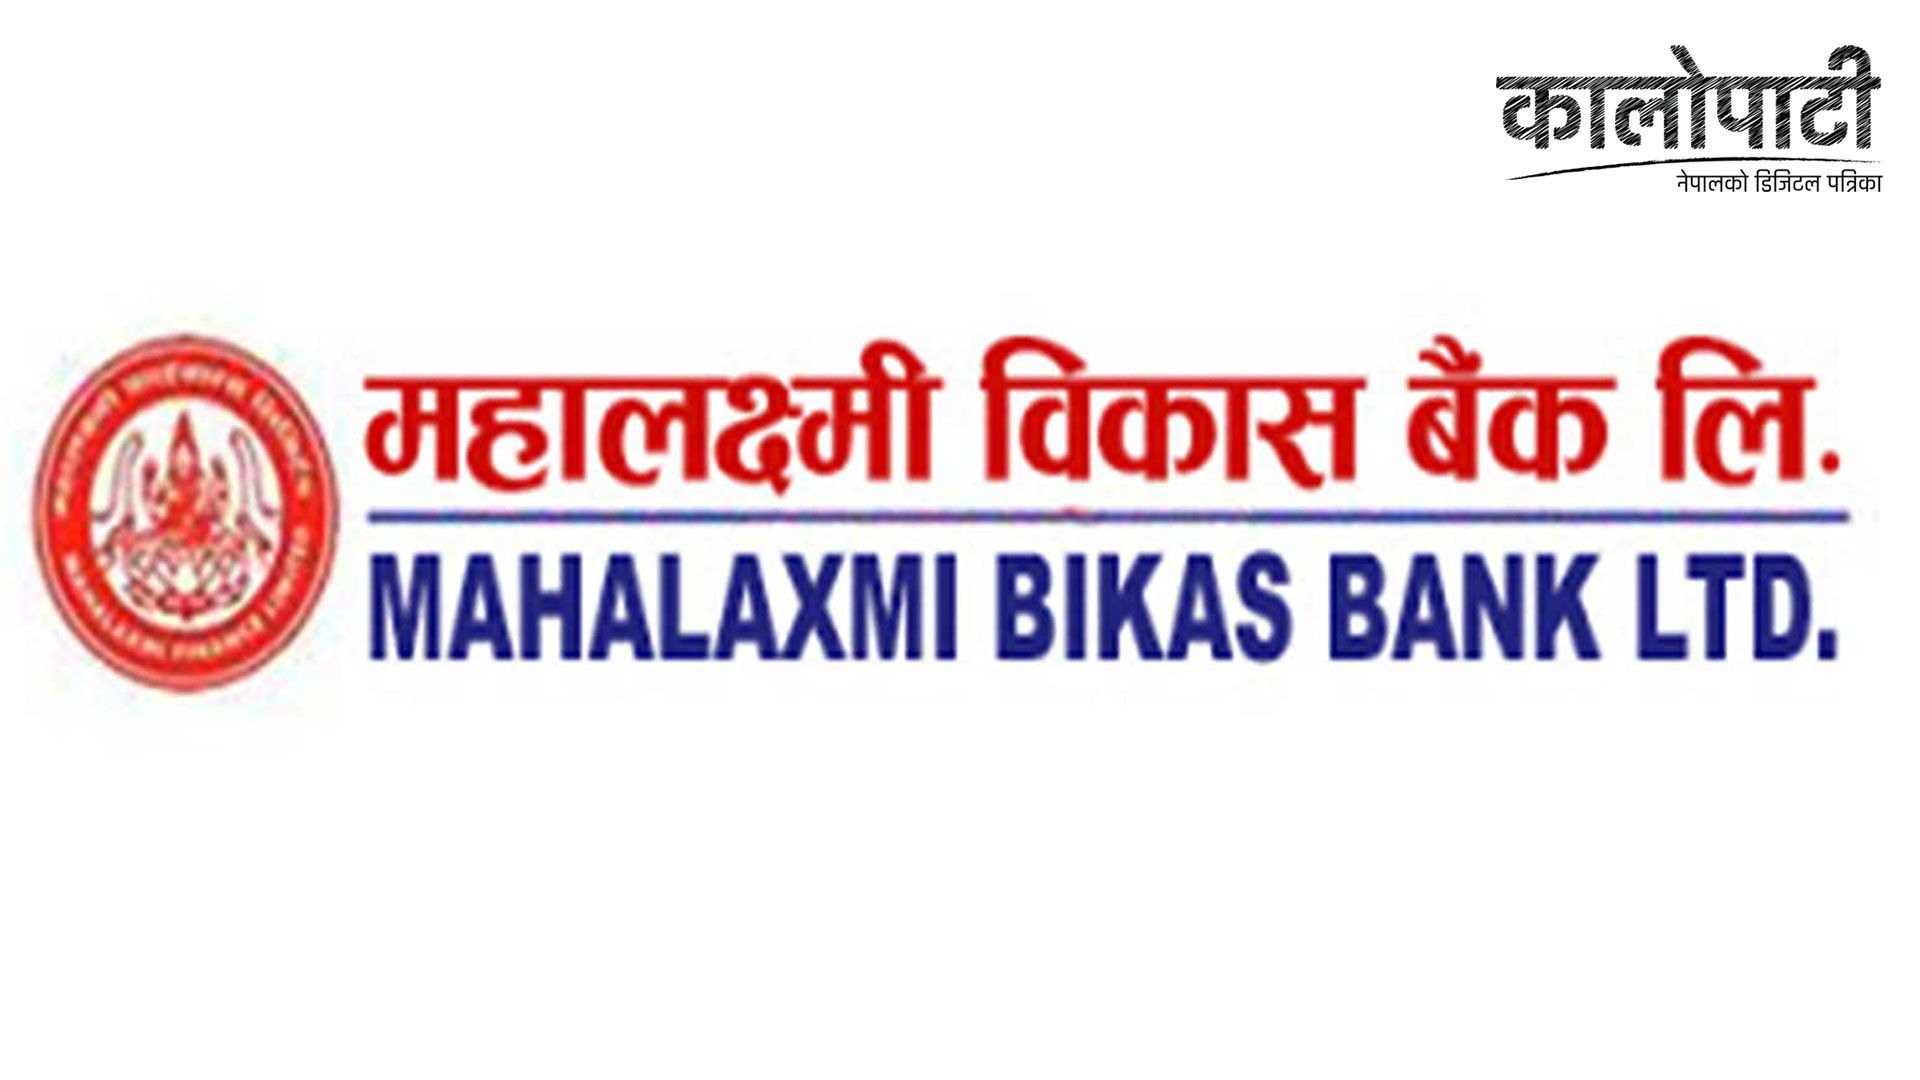 महालक्ष्मी विकास बैंक र इट एण्ड ड्रिङ्क रेष्टुरेन्टबीच सम्झौता, बैंकका ग्राहकले आकर्षक छुट पाउने